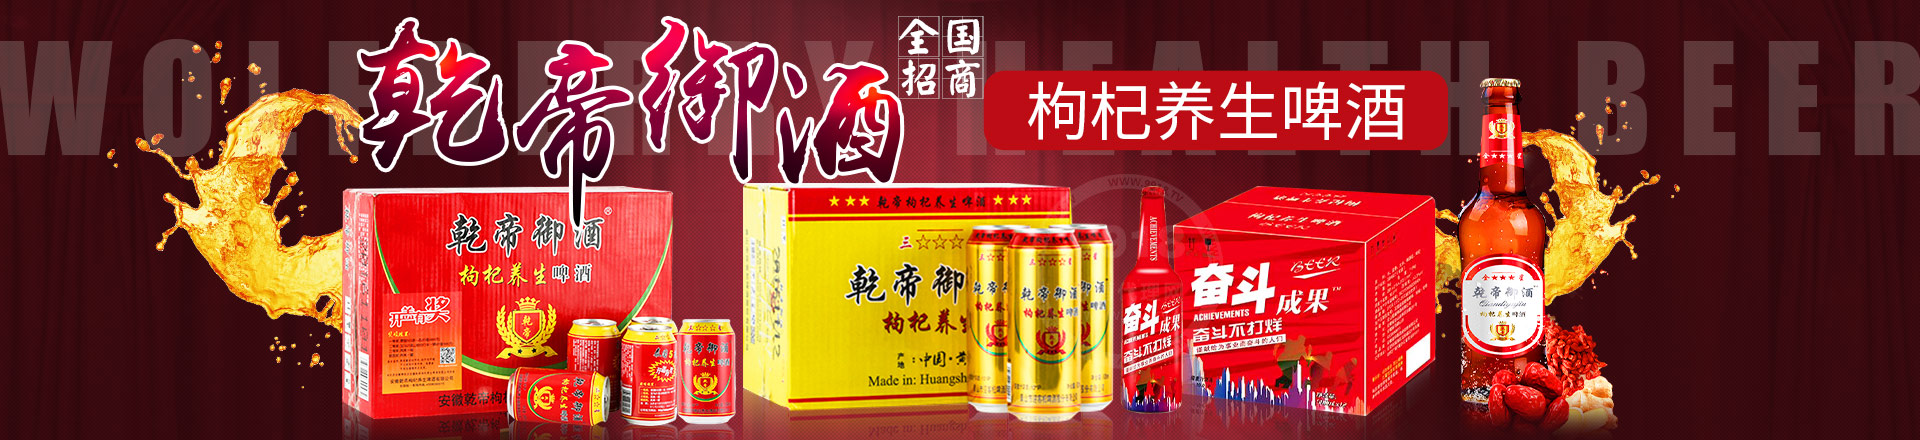 安徽乾帝枸杞养生啤酒有限公司